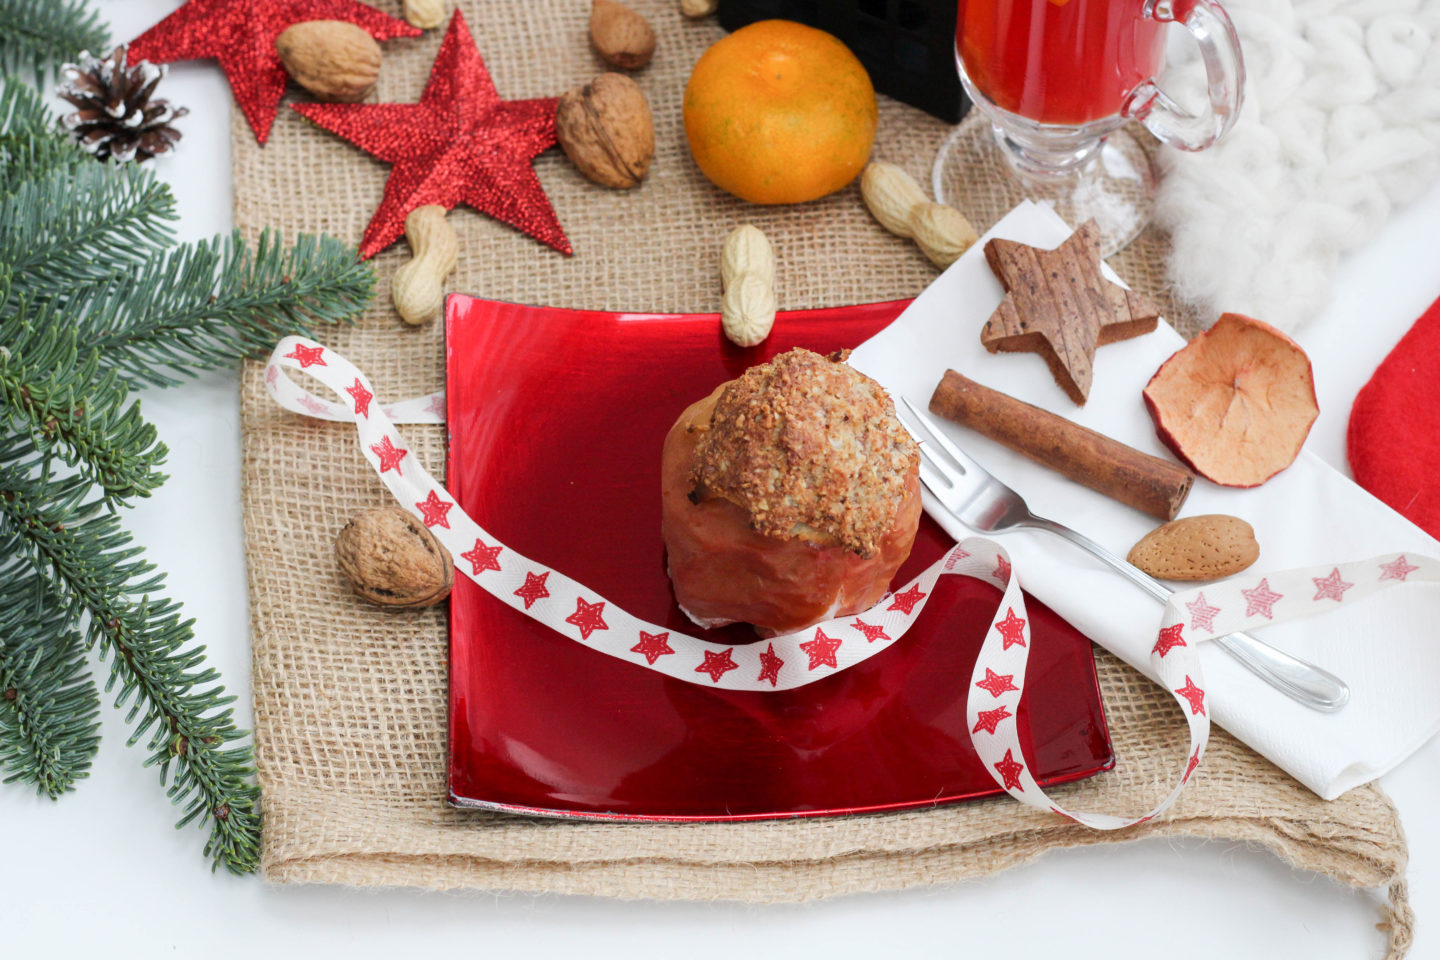 vegan-nikolaus-krampus-weihnachten-bratapfel-germteig-perchten-nuesse-christmas-soulfood-homespa-plantbased-26-von-35